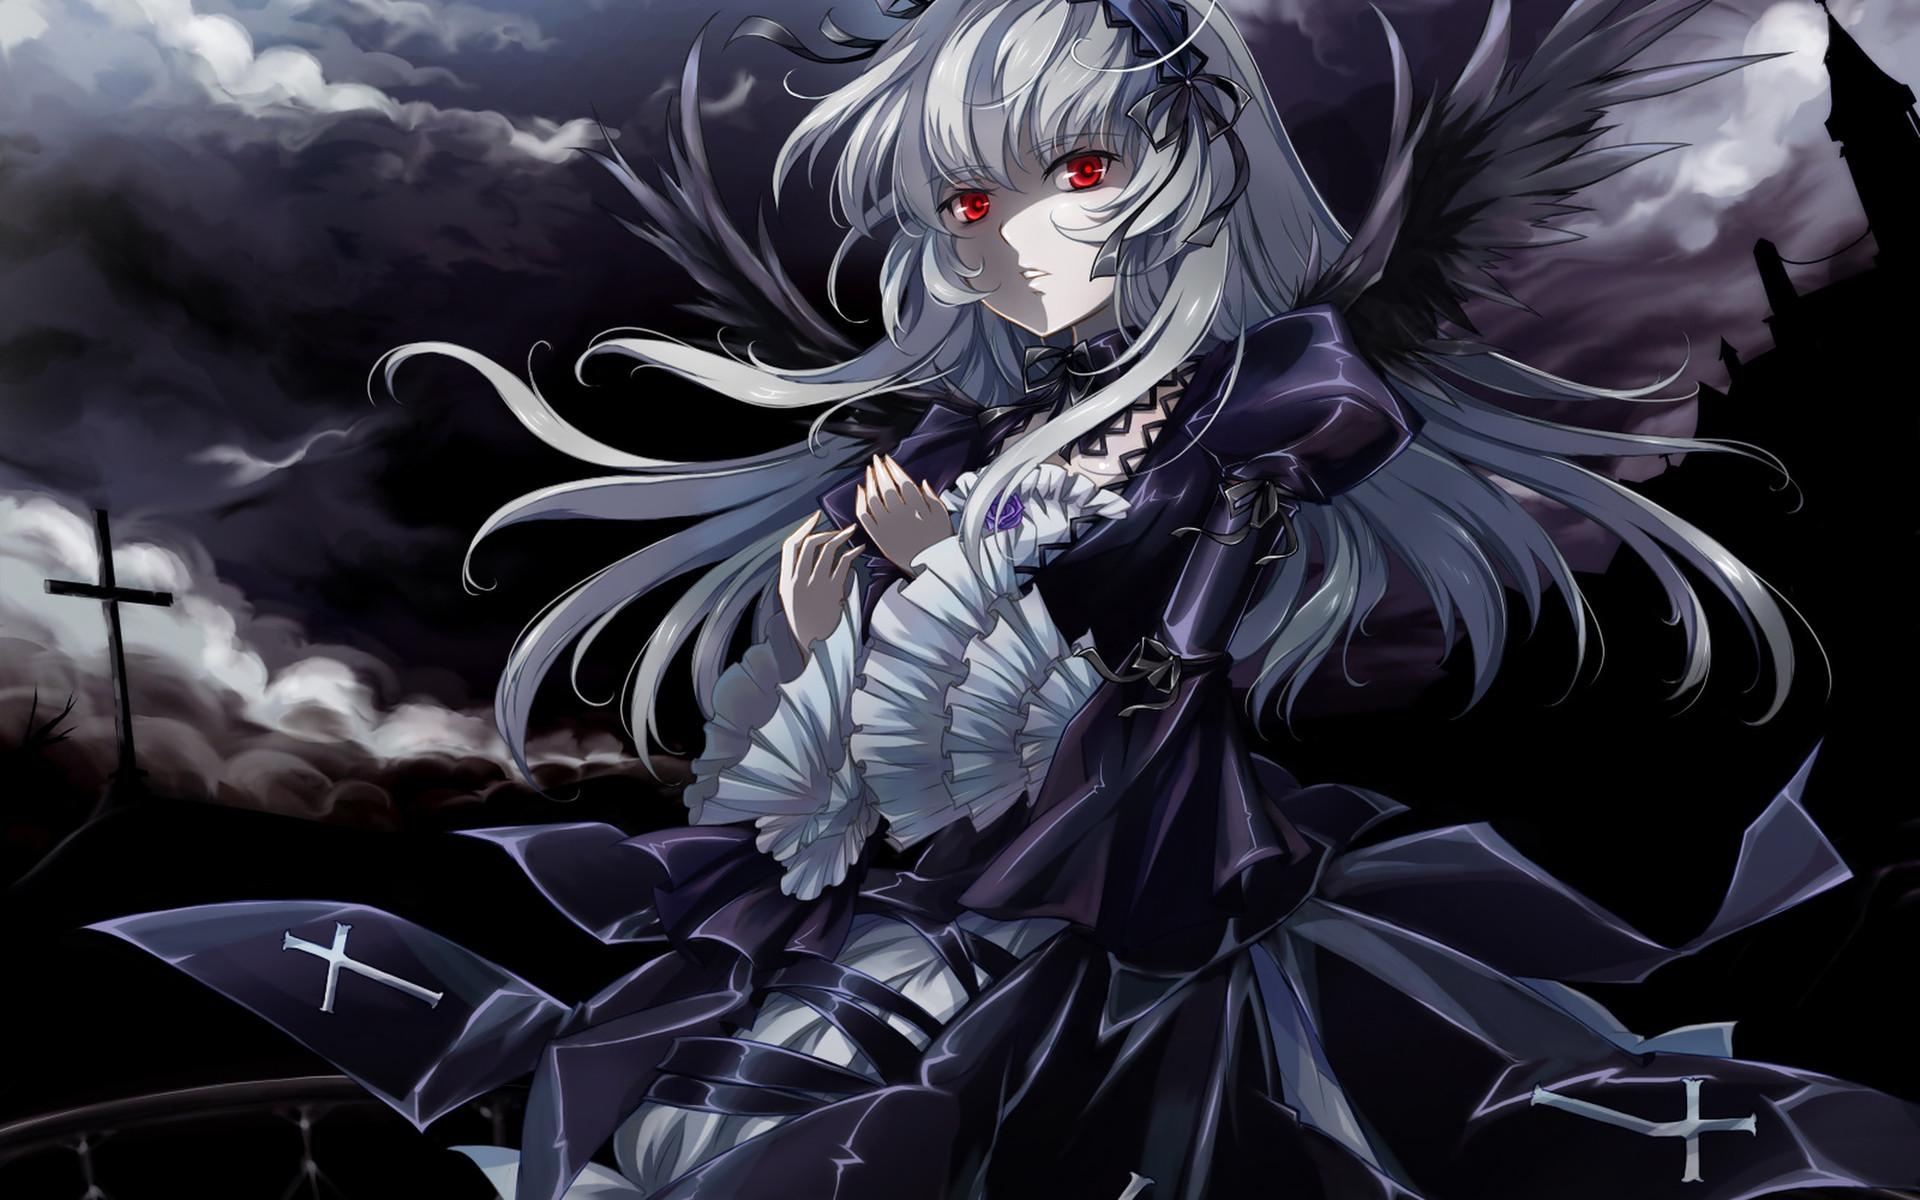 Gothic Anime: Crosses, Dark atmosphere, Midnight, Grim art, Rozen Maiden, Suigintou. 1920x1200 HD Wallpaper.